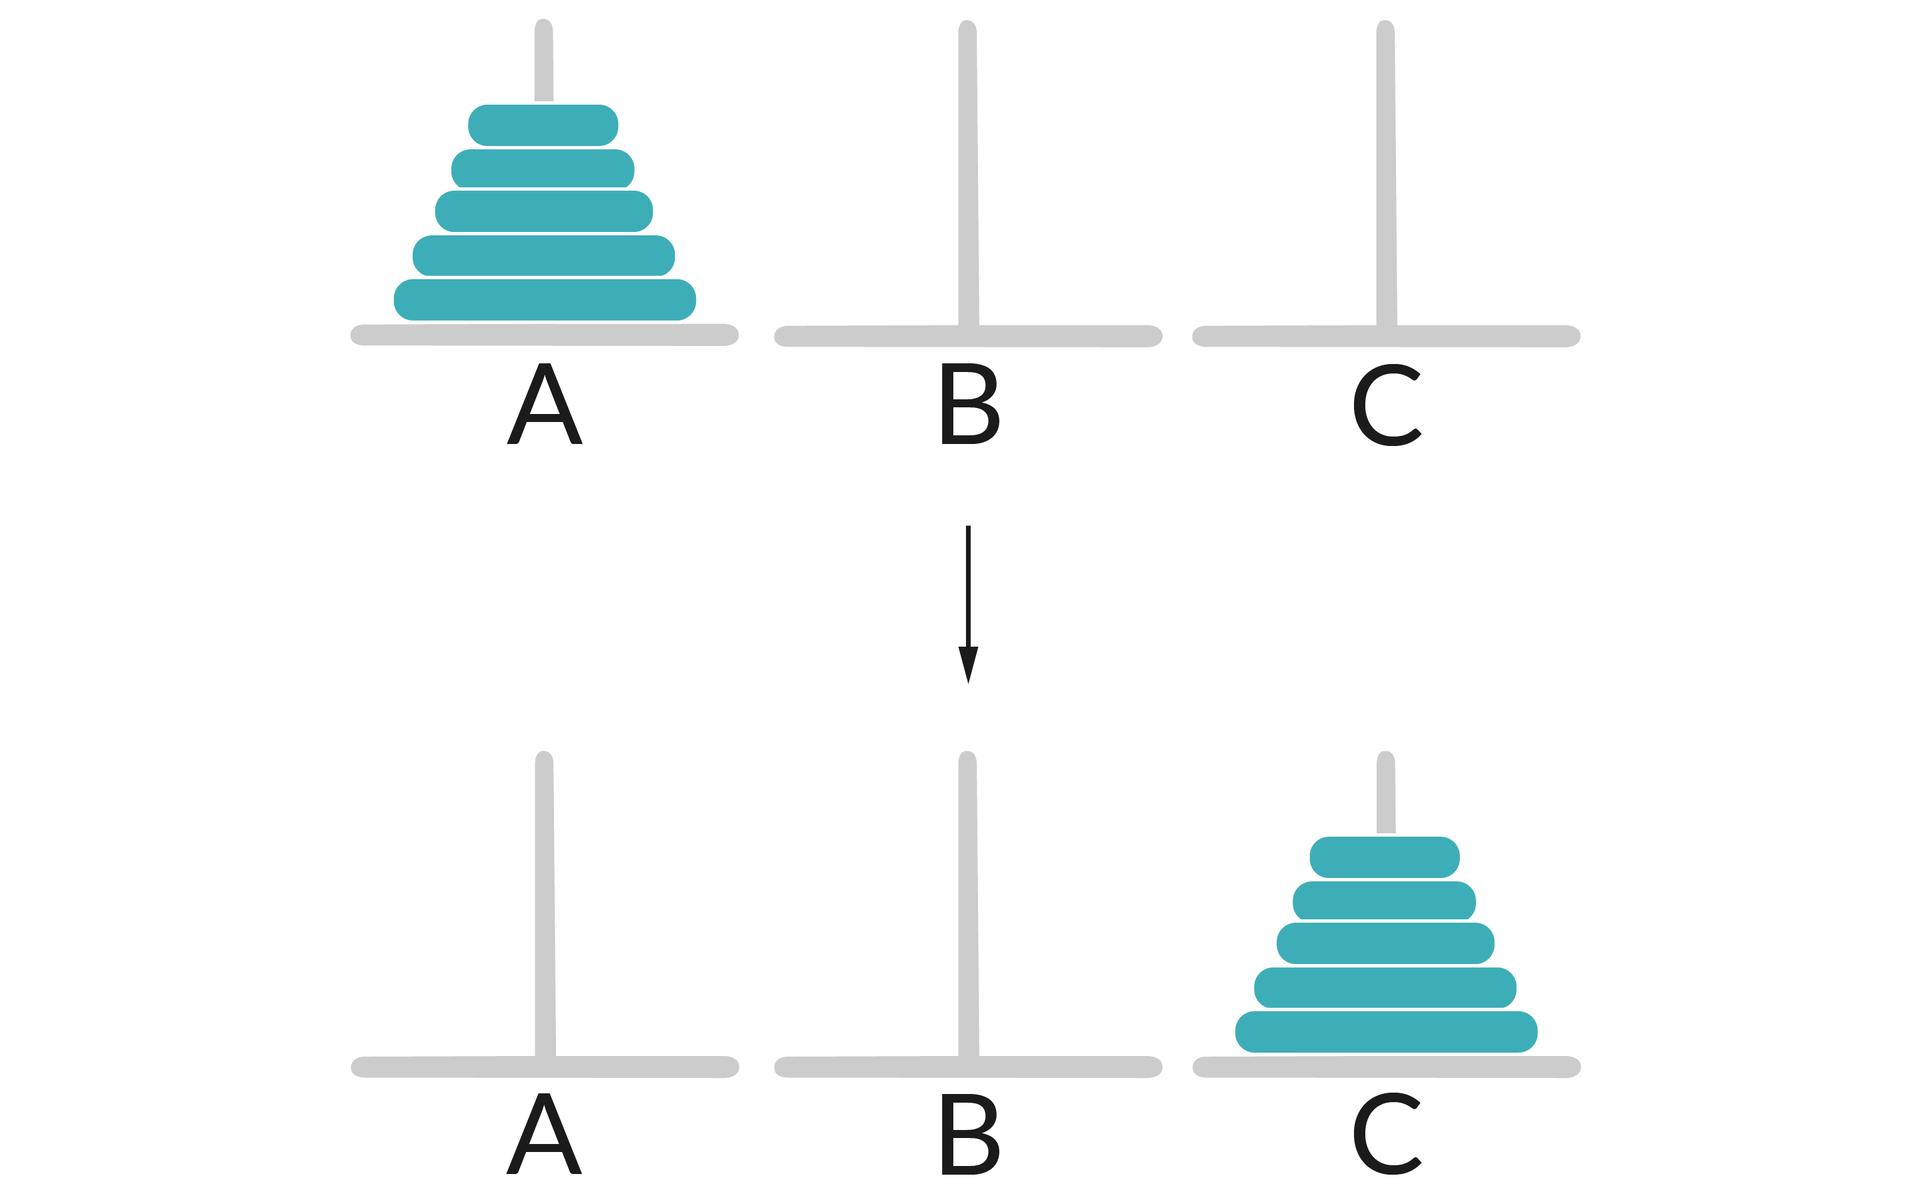 Zdjęcie przedstawia krążki ustawione na słupkach.  W pierwszym rzędzie znajdują się słupki podpisane jako A, B, C, a wszystkie krążki ułożone są na słupku A w kolejności od największego do najmniejszego   W drugim rzędzie krążki ustawione są w tej samej kolejności na słupku z oznaczeniem C.